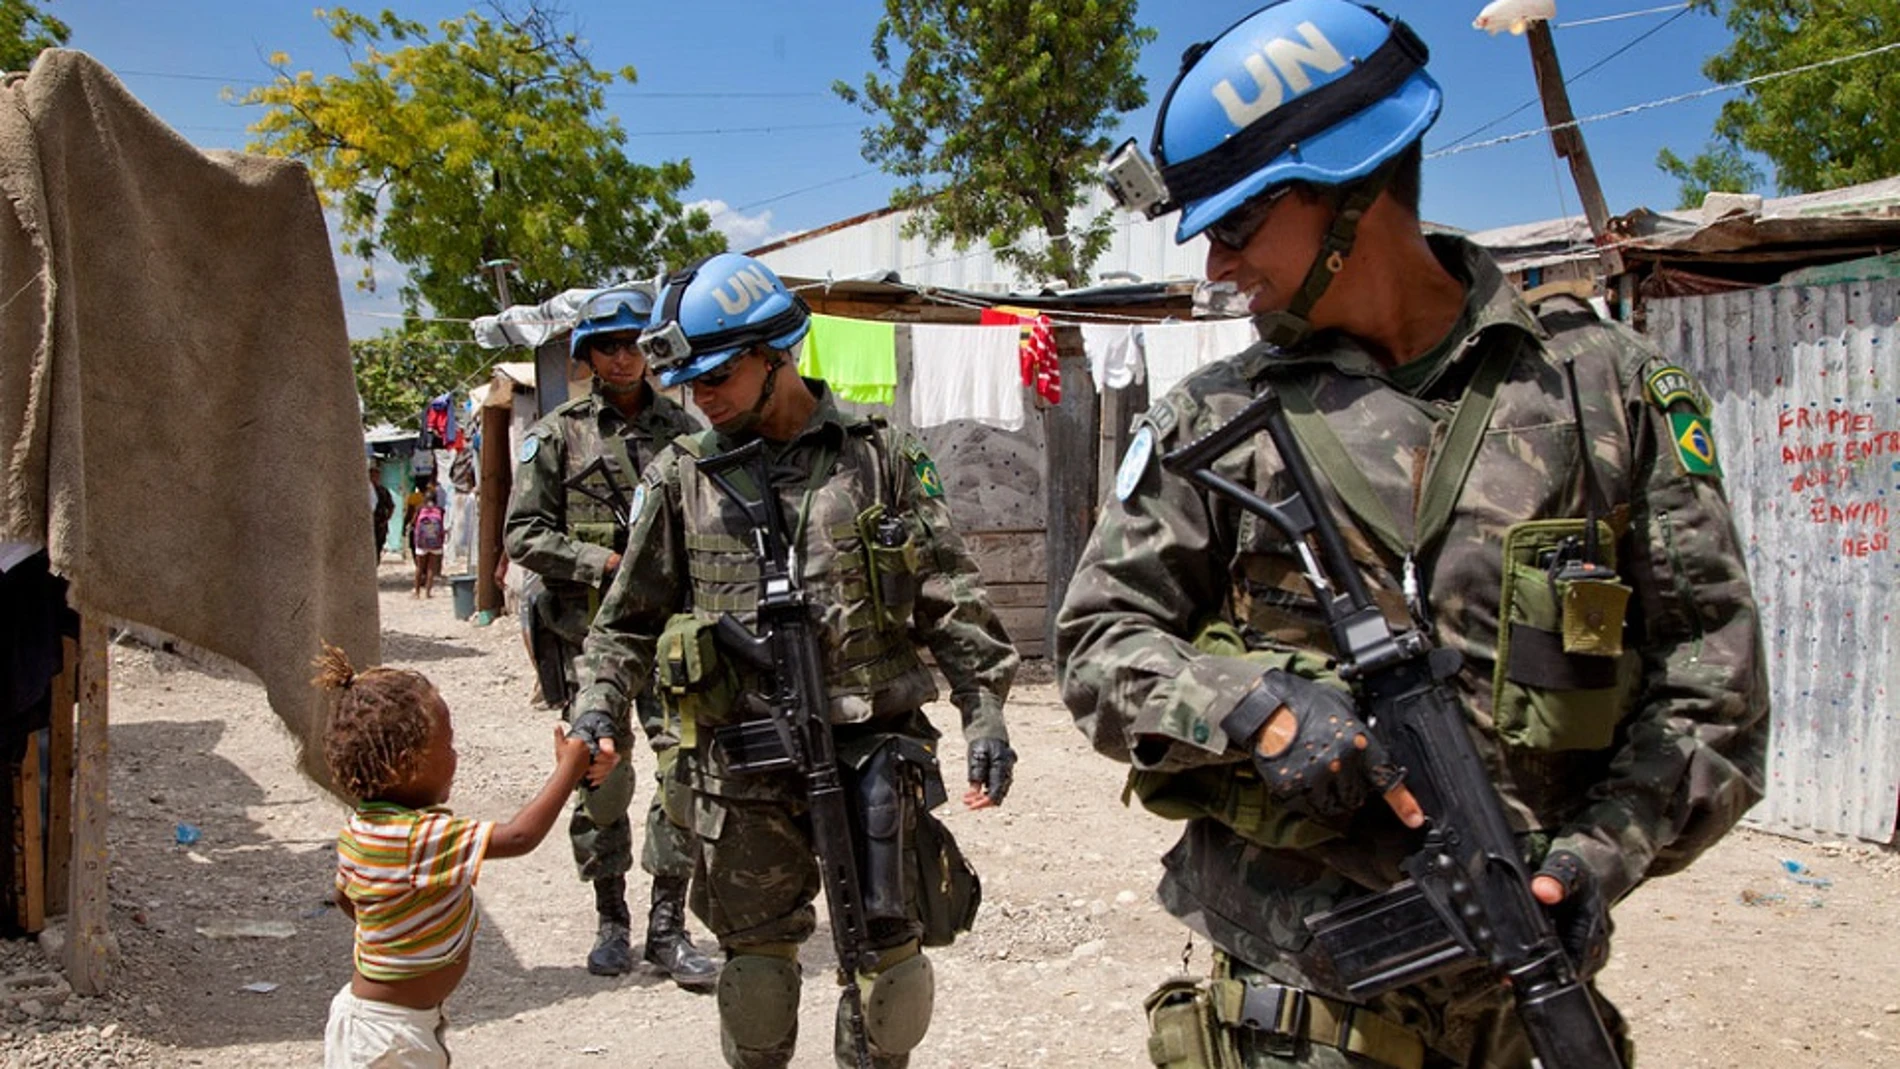 Los soldados de la ONU explotaron sexualmente a las mujeres en Haití y Liberia